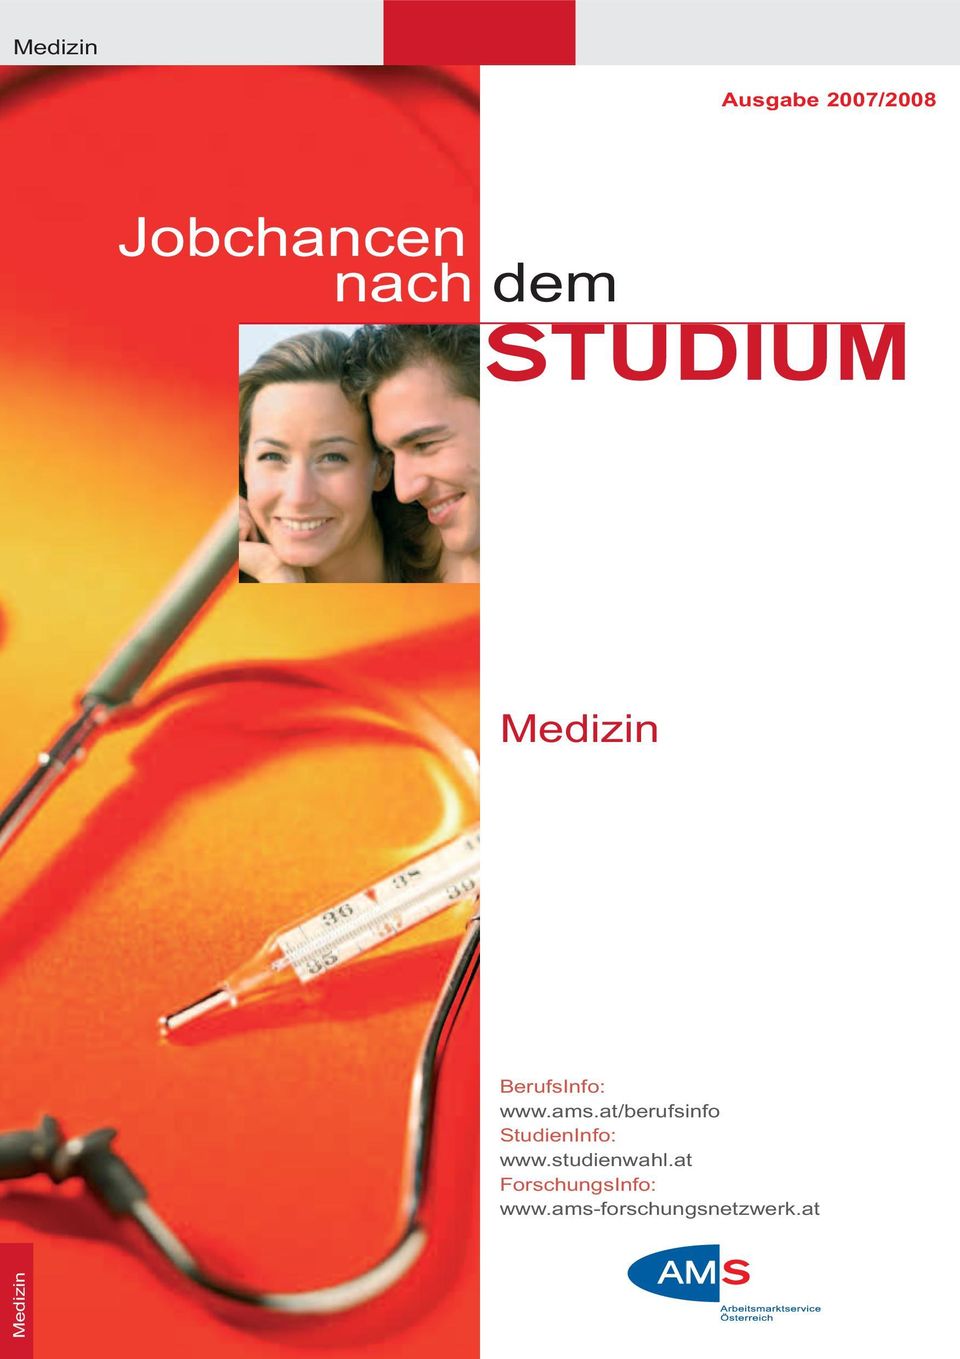 at/berufsinfo StudienInfo: www.studienwahl.